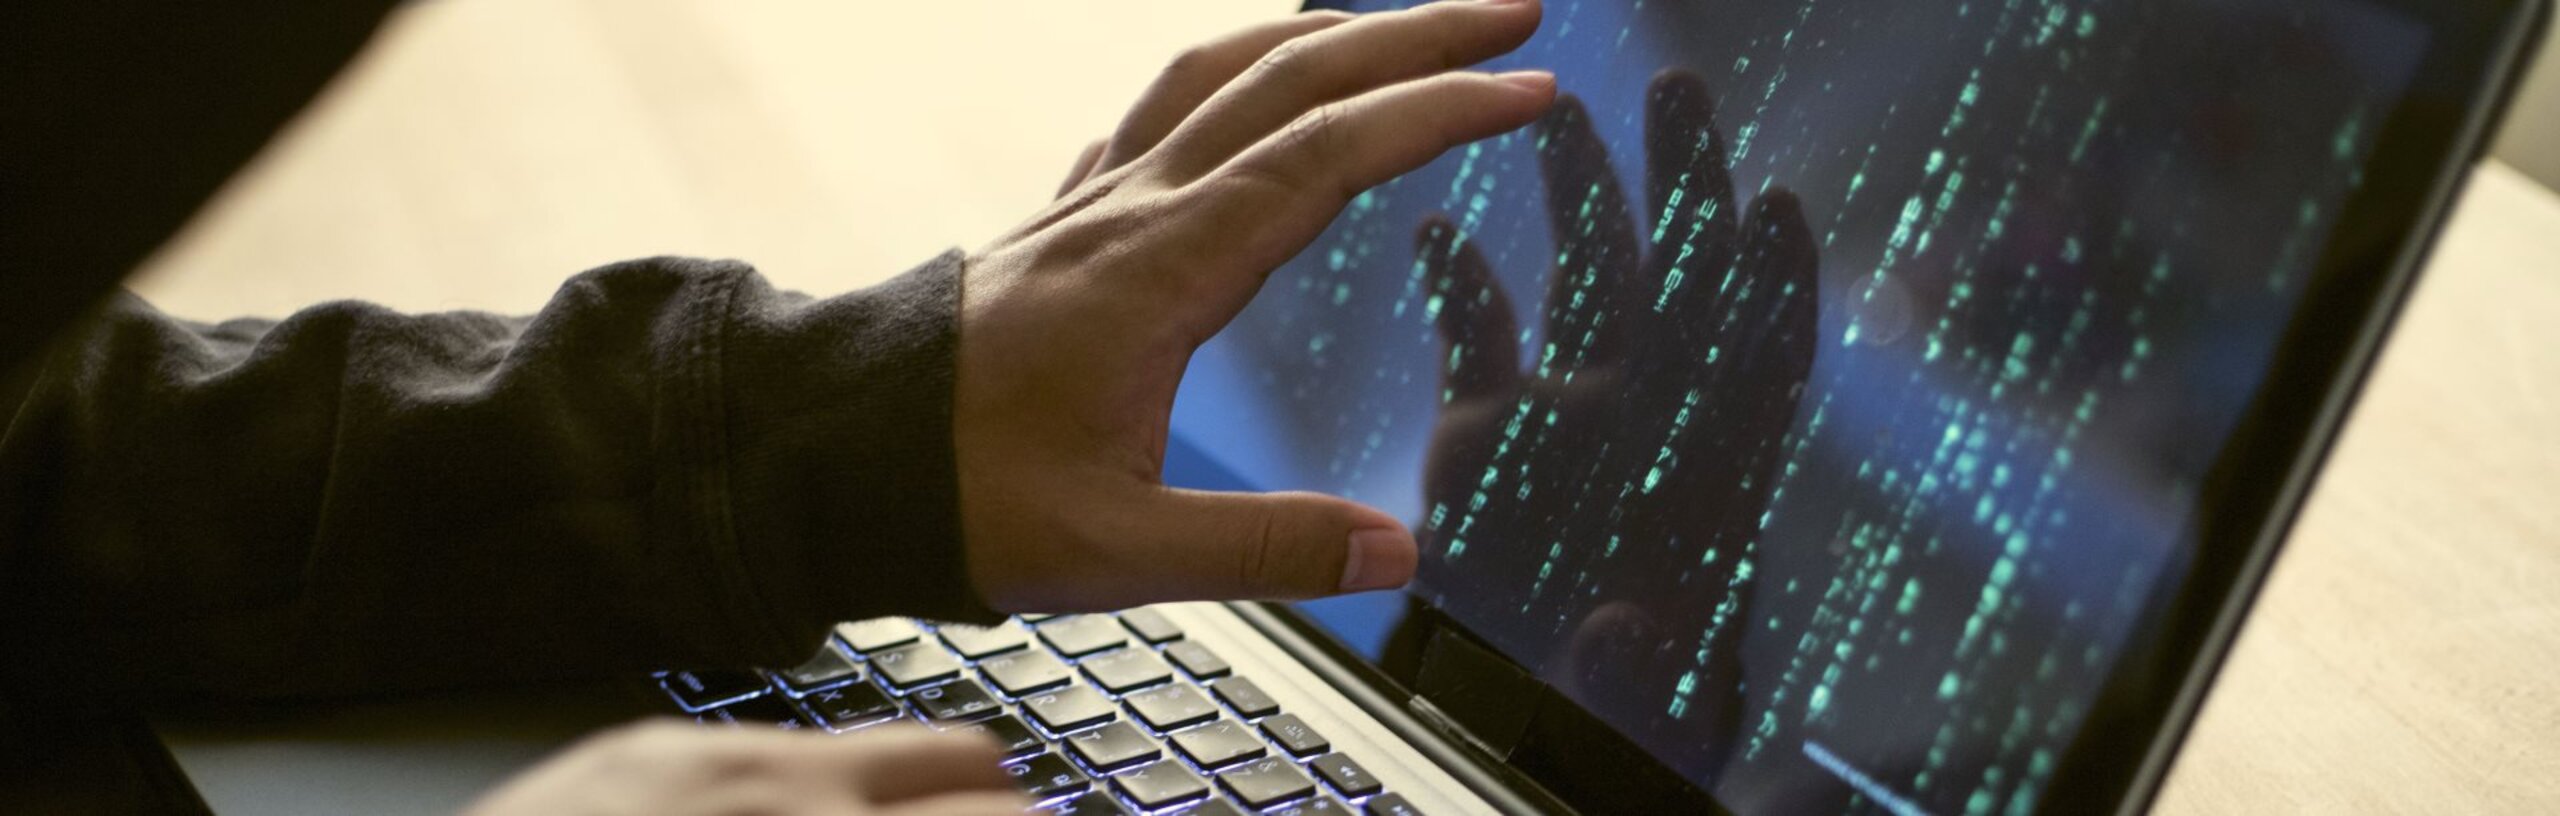 Ein Hacker sitzt an einem Laptop und zeigt mit seiner Hand auf den Bildschirm. Auf dem Bildschirm sind Zahlen und Buchstaben zu sehen.